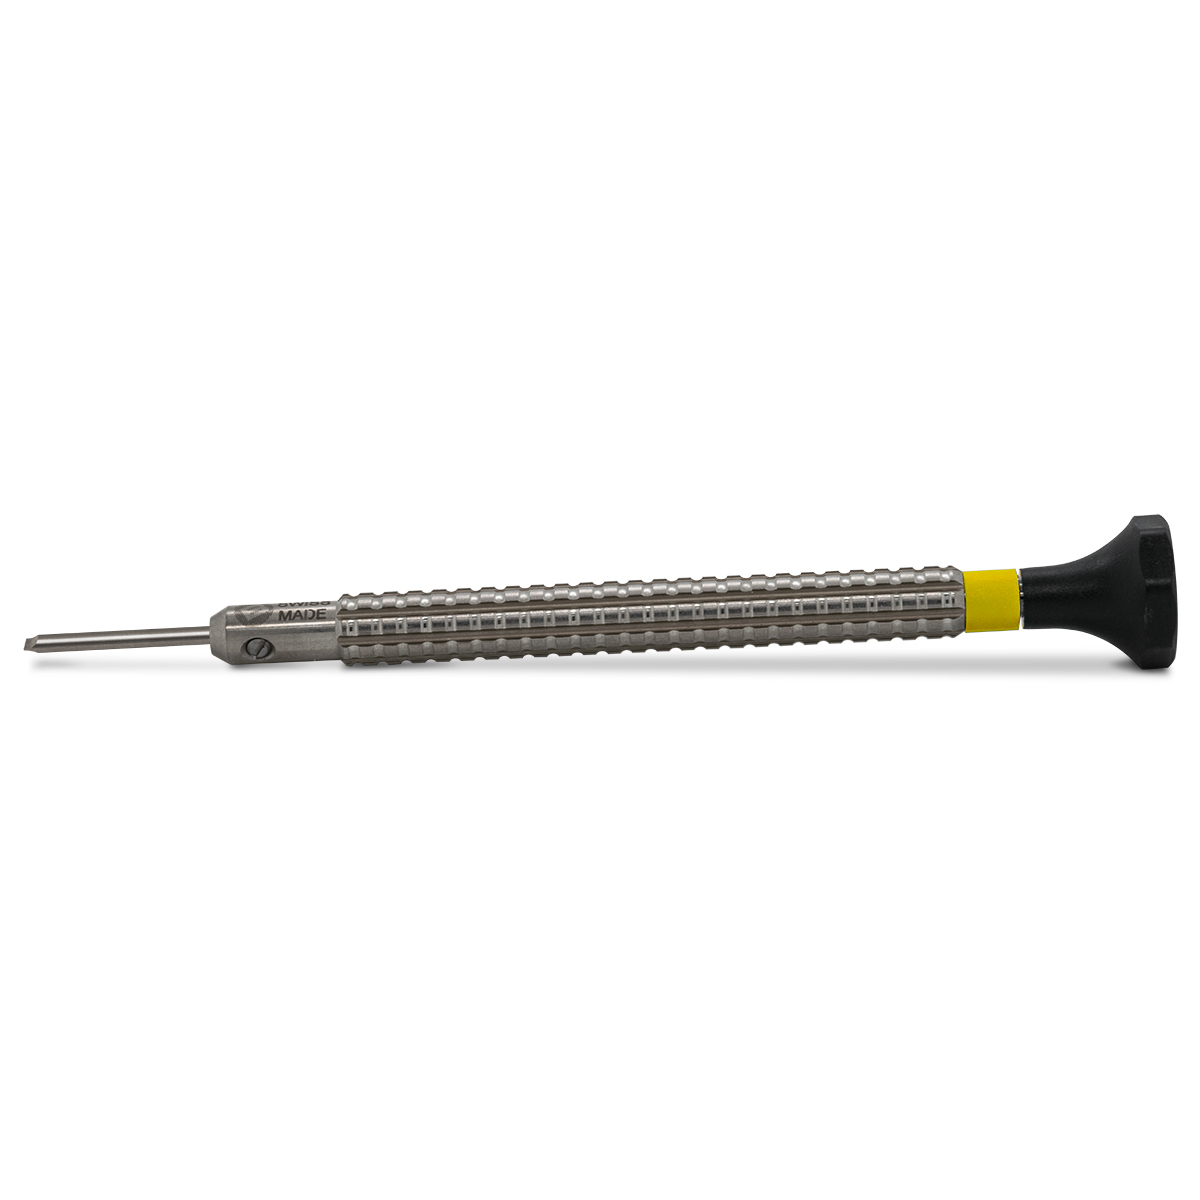 Bergeon 7965-MFP-080 Schraubendreher, Klinge 0,8 mm, Parallelschliff, gelb, für Drehmomenttrommeln